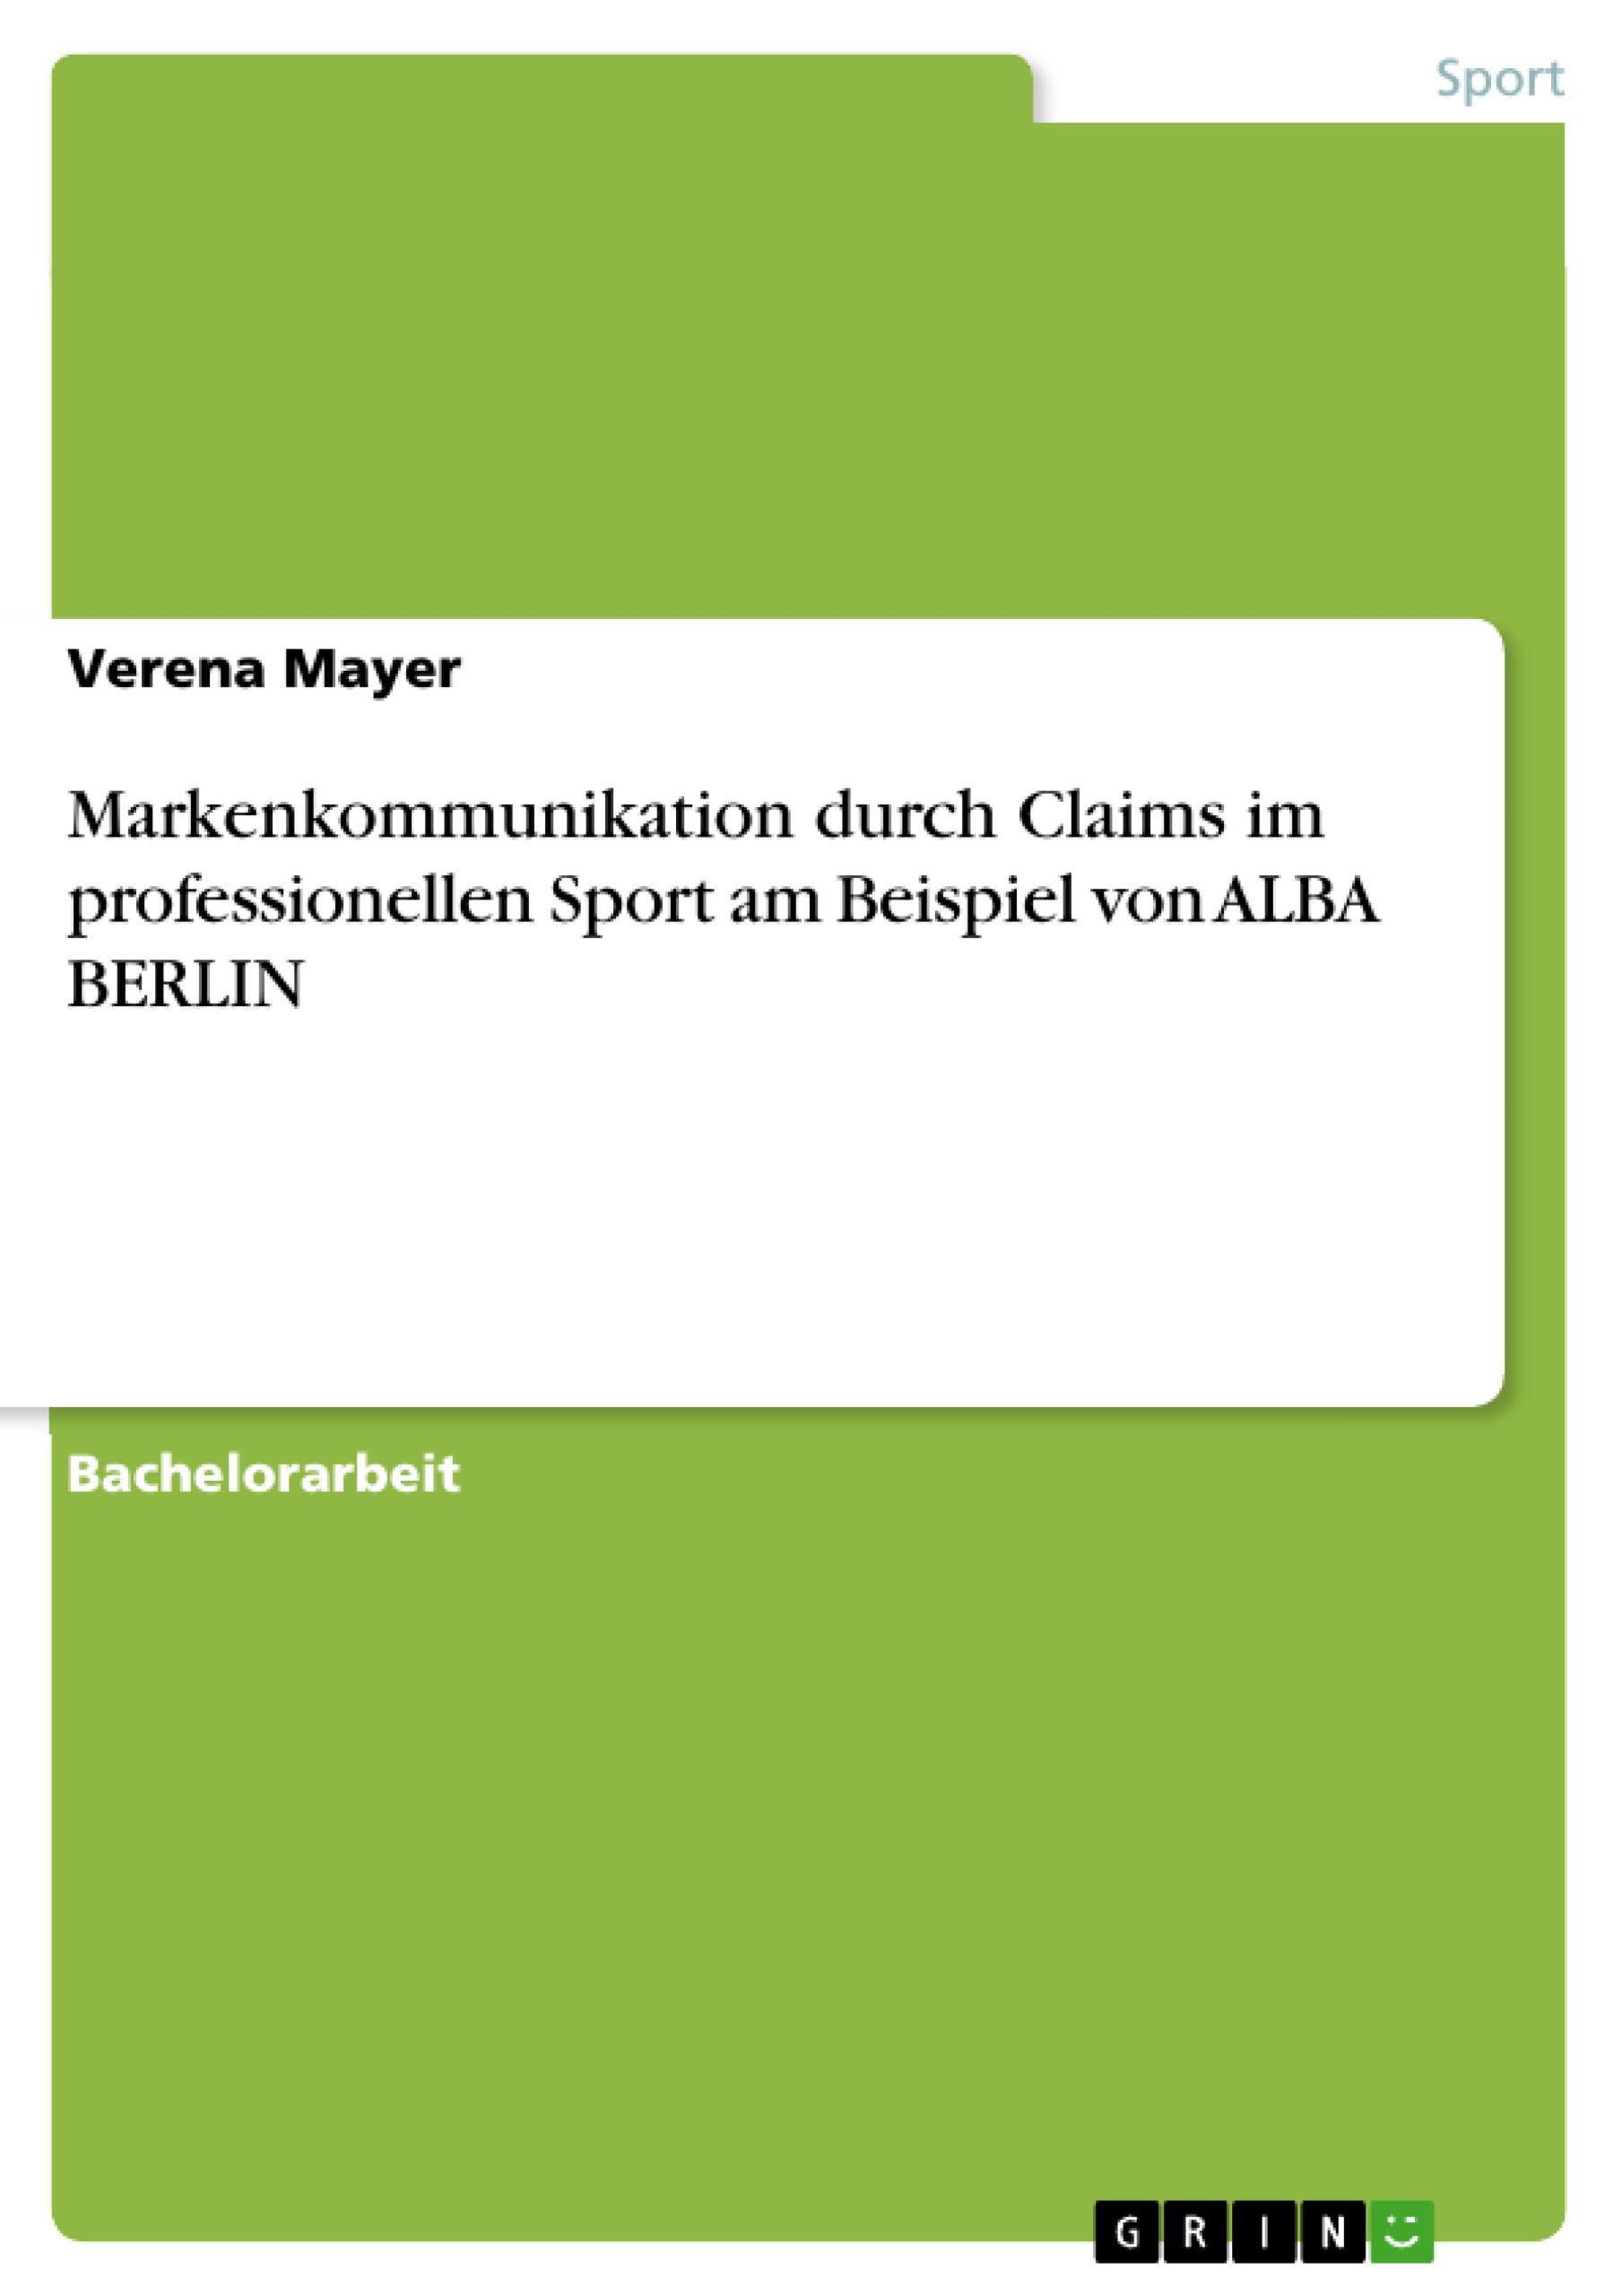 Markenkommunikation durch Claims im professionellen Sport am Beispiel von ALBA BERLIN - Mayer, Verena